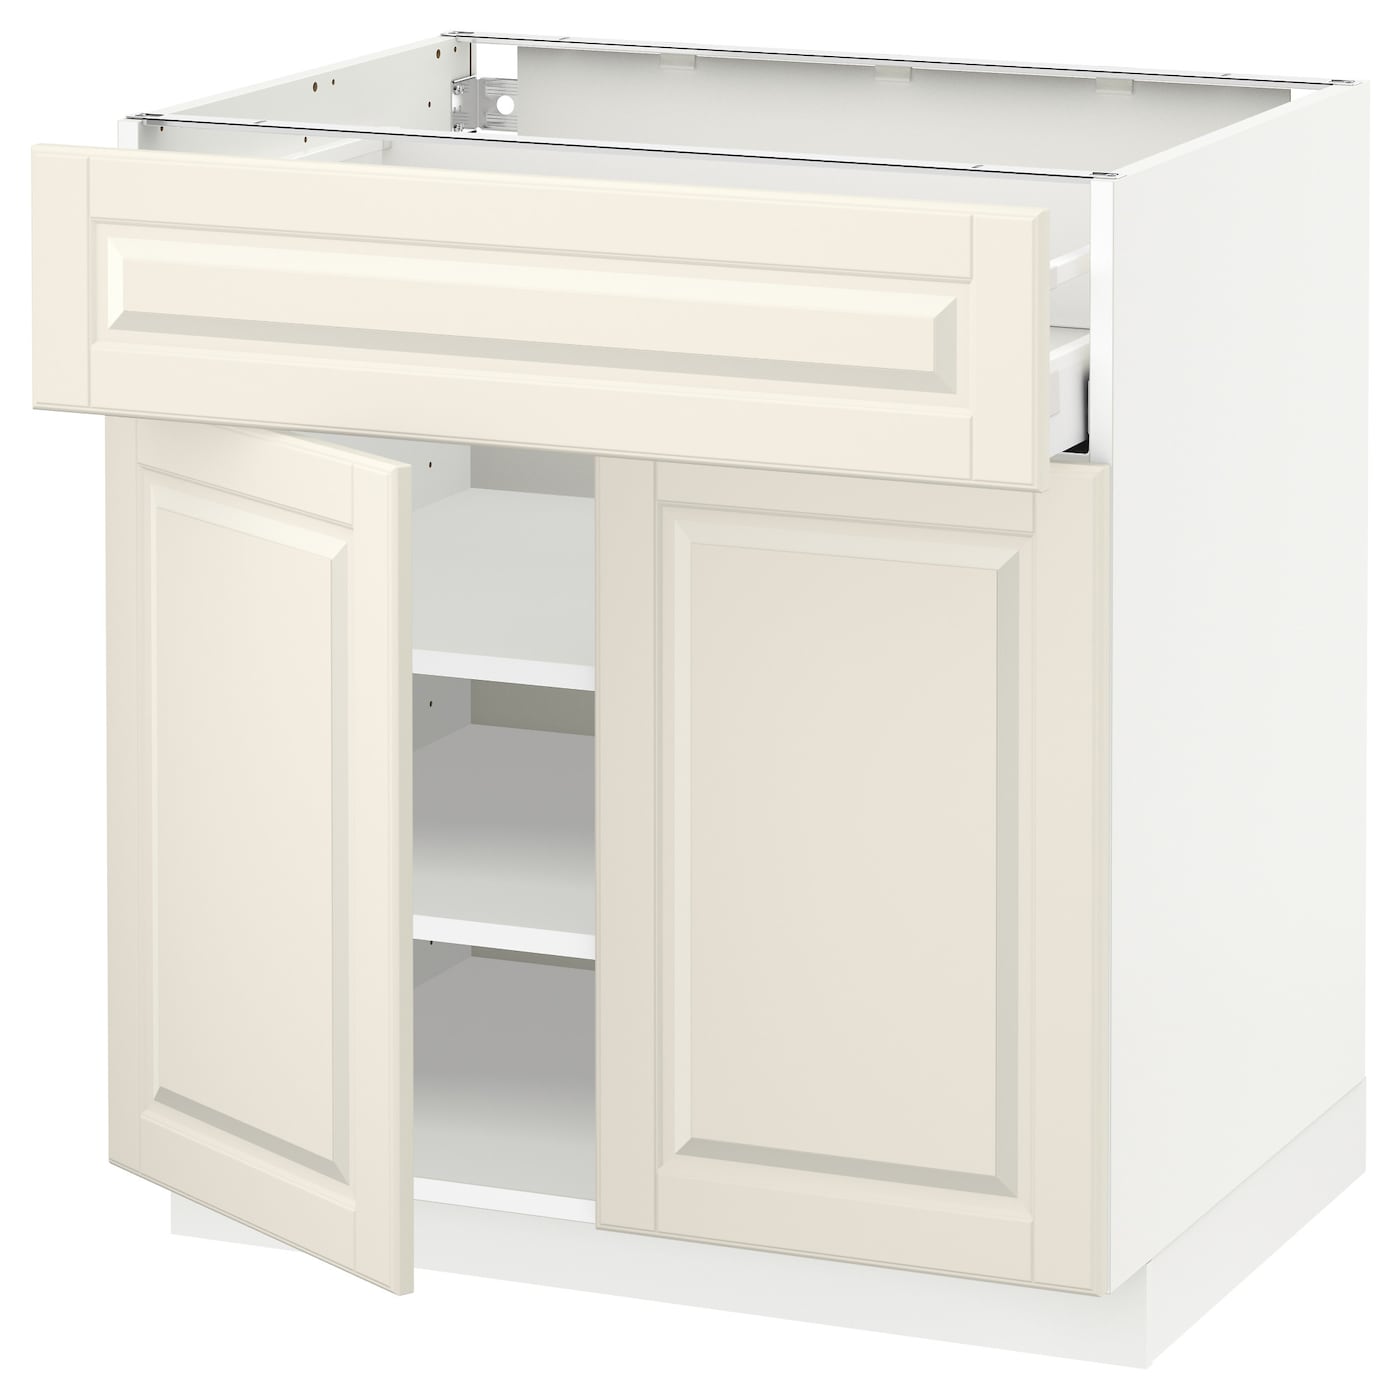 Напольный кухонный шкаф  - IKEA METOD MAXIMERA, 88x61,9x80см, белый, МЕТОД МАКСИМЕРА ИКЕАMERA Напольный кухонный шкаф ИКЕА